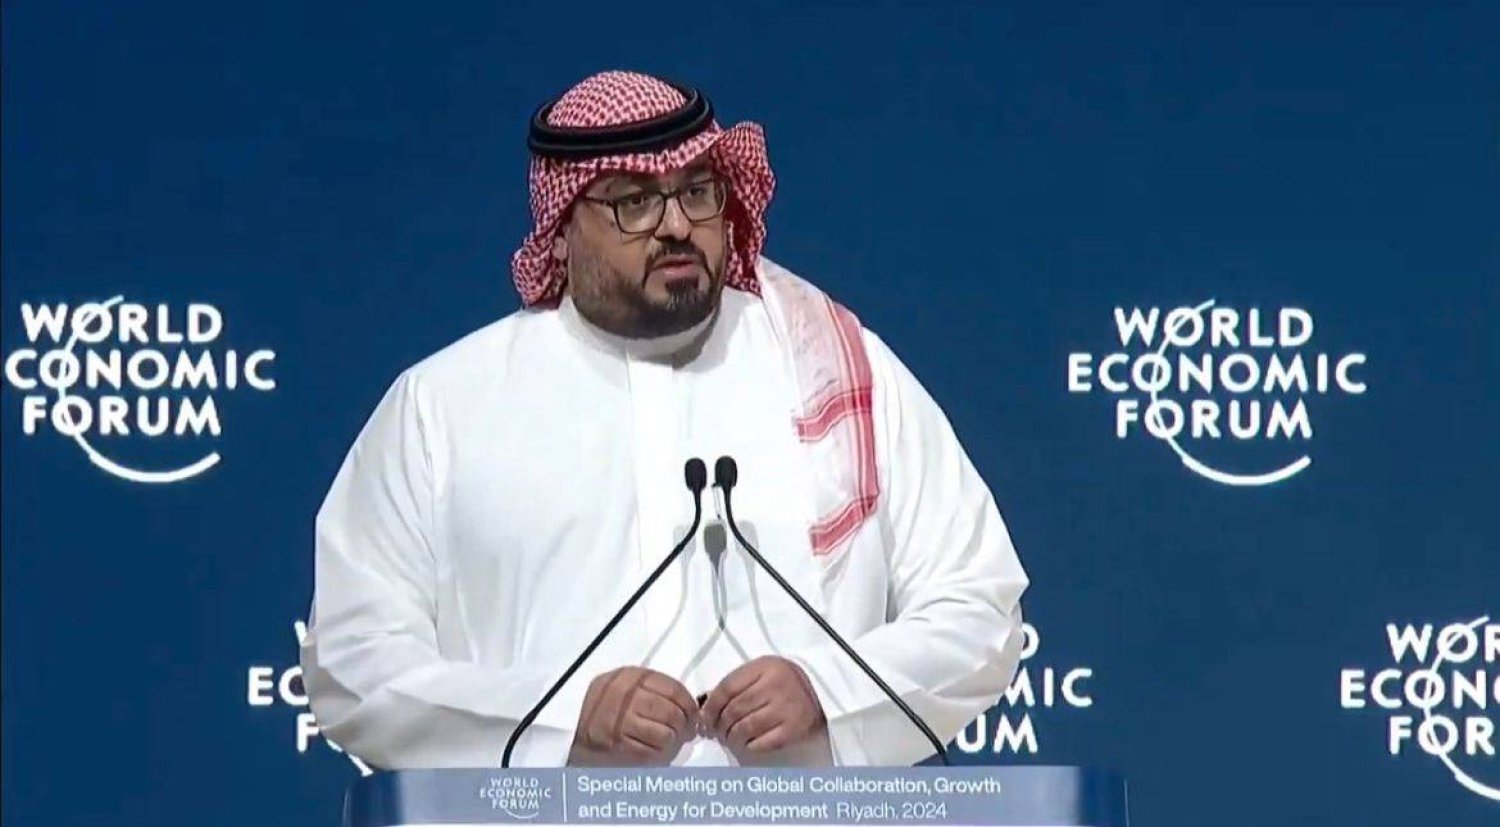 وزير الاقتصاد والتخطيط السعودي يتحدث للحضور خلال المنتدى الاقتصادي العالمي بالرياض (الشرق الأوسط)